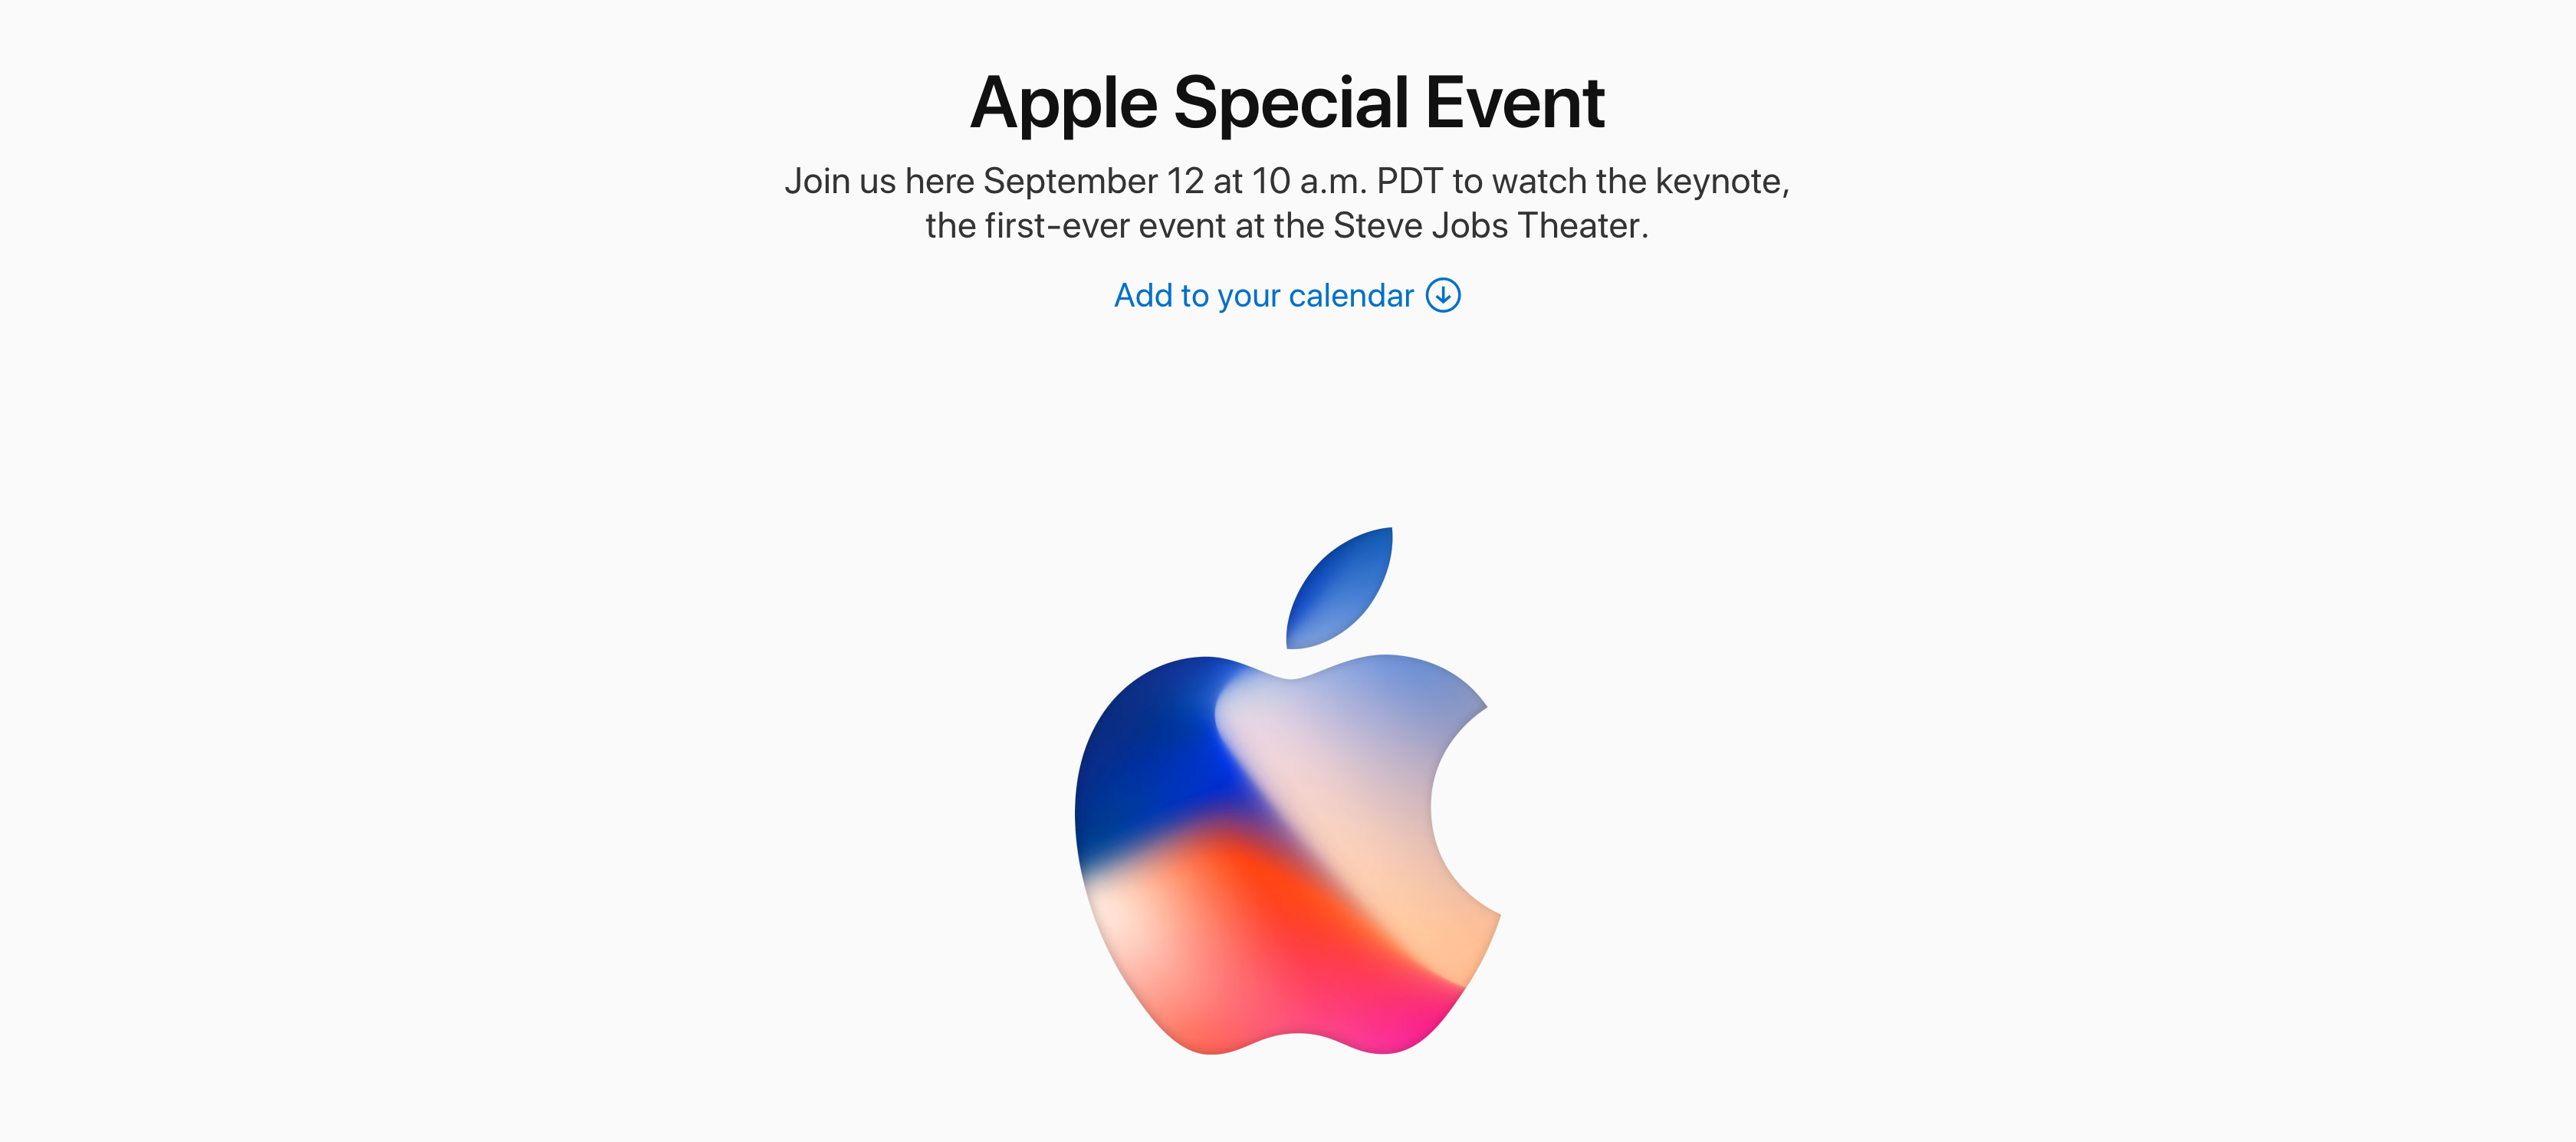 Apple ส่งจดหมายเชิญสื่อแล้ว คาดเปิดตัว iPhone 8 วันที่ 12 กันยายน 2560 นี้